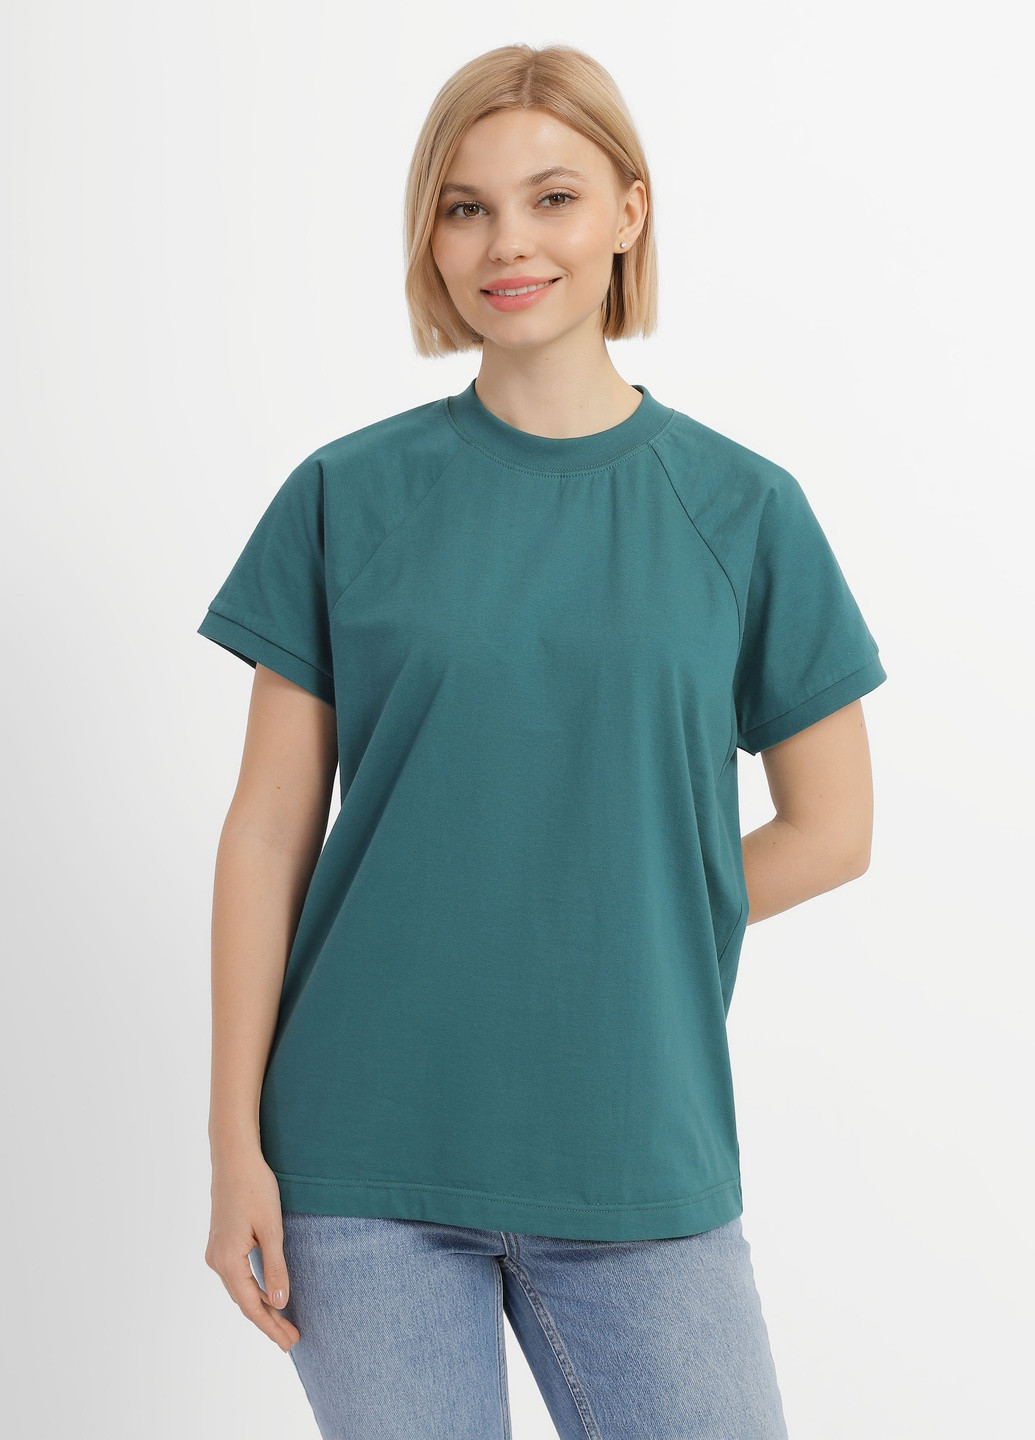 Зеленая летняя футболка женская Роза